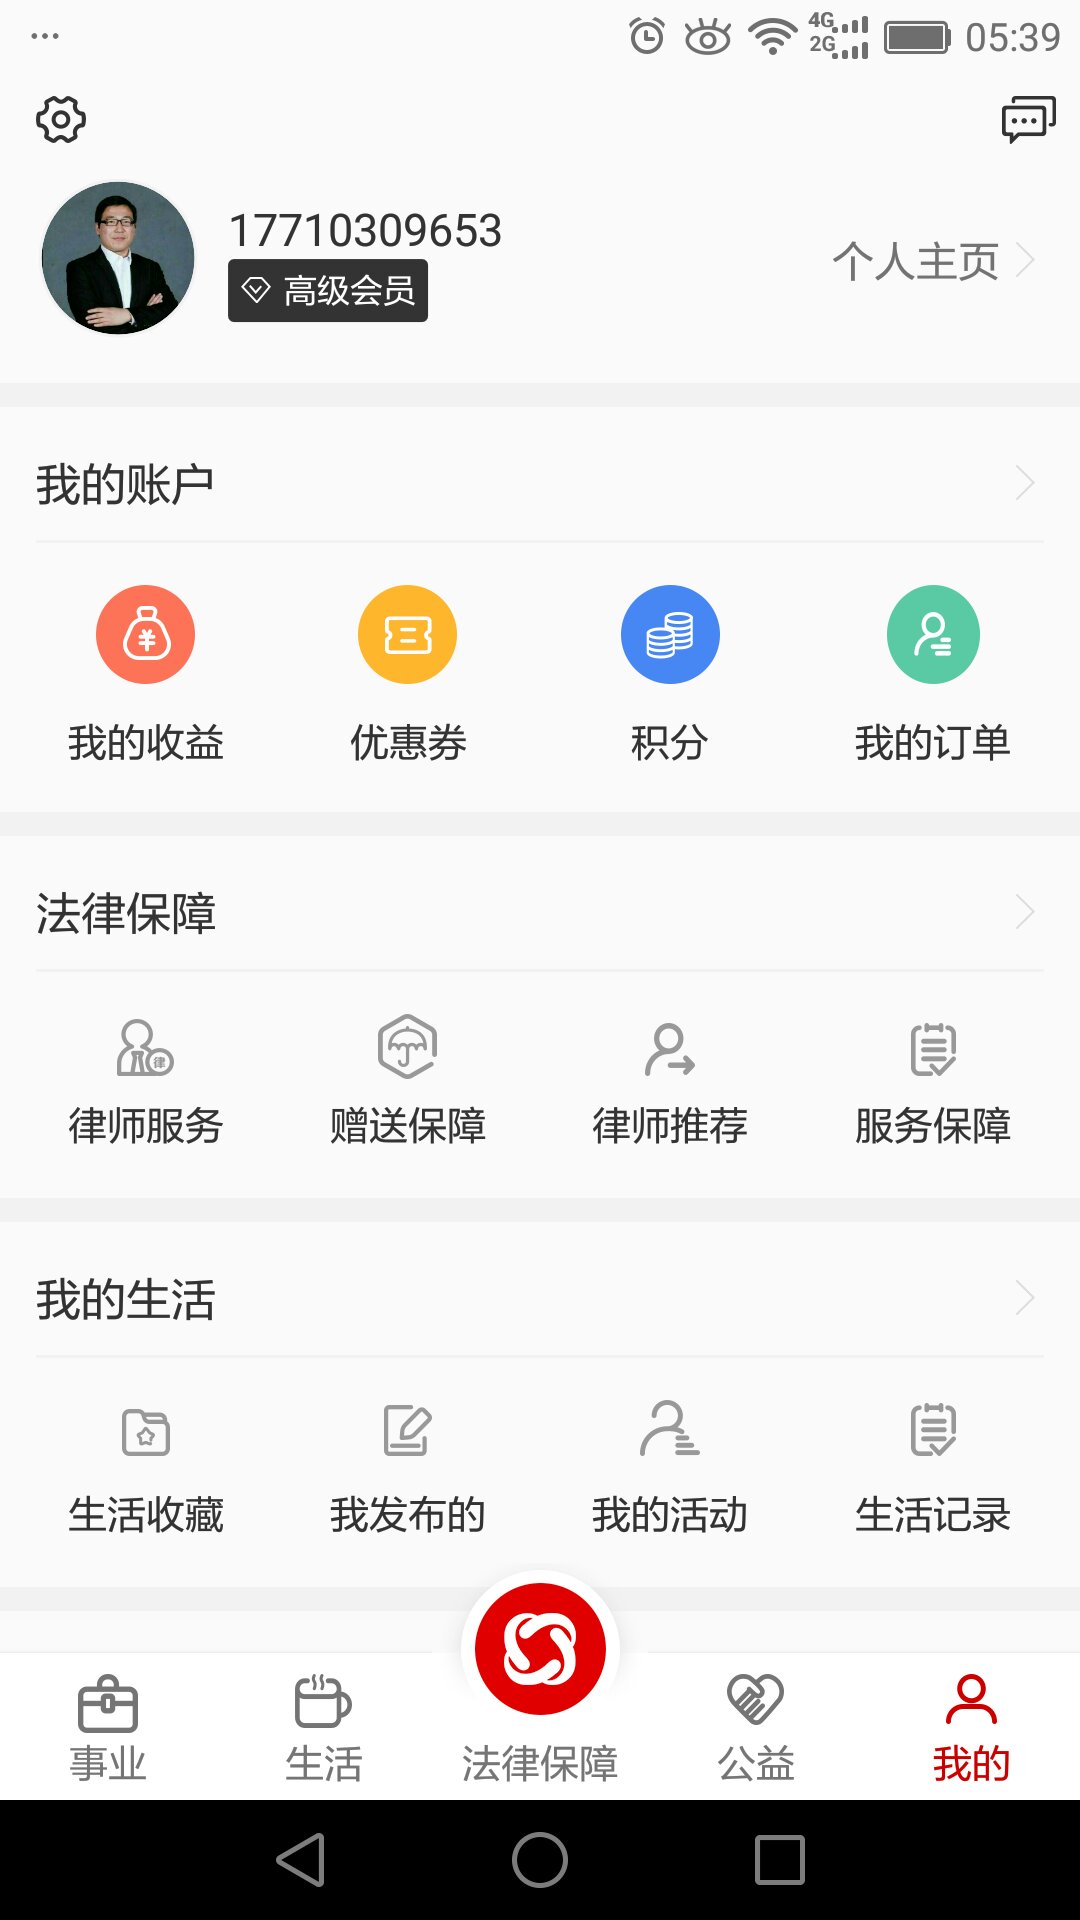  乐土社区app下载- 乐土社区安卓版下载v1.9.3图1